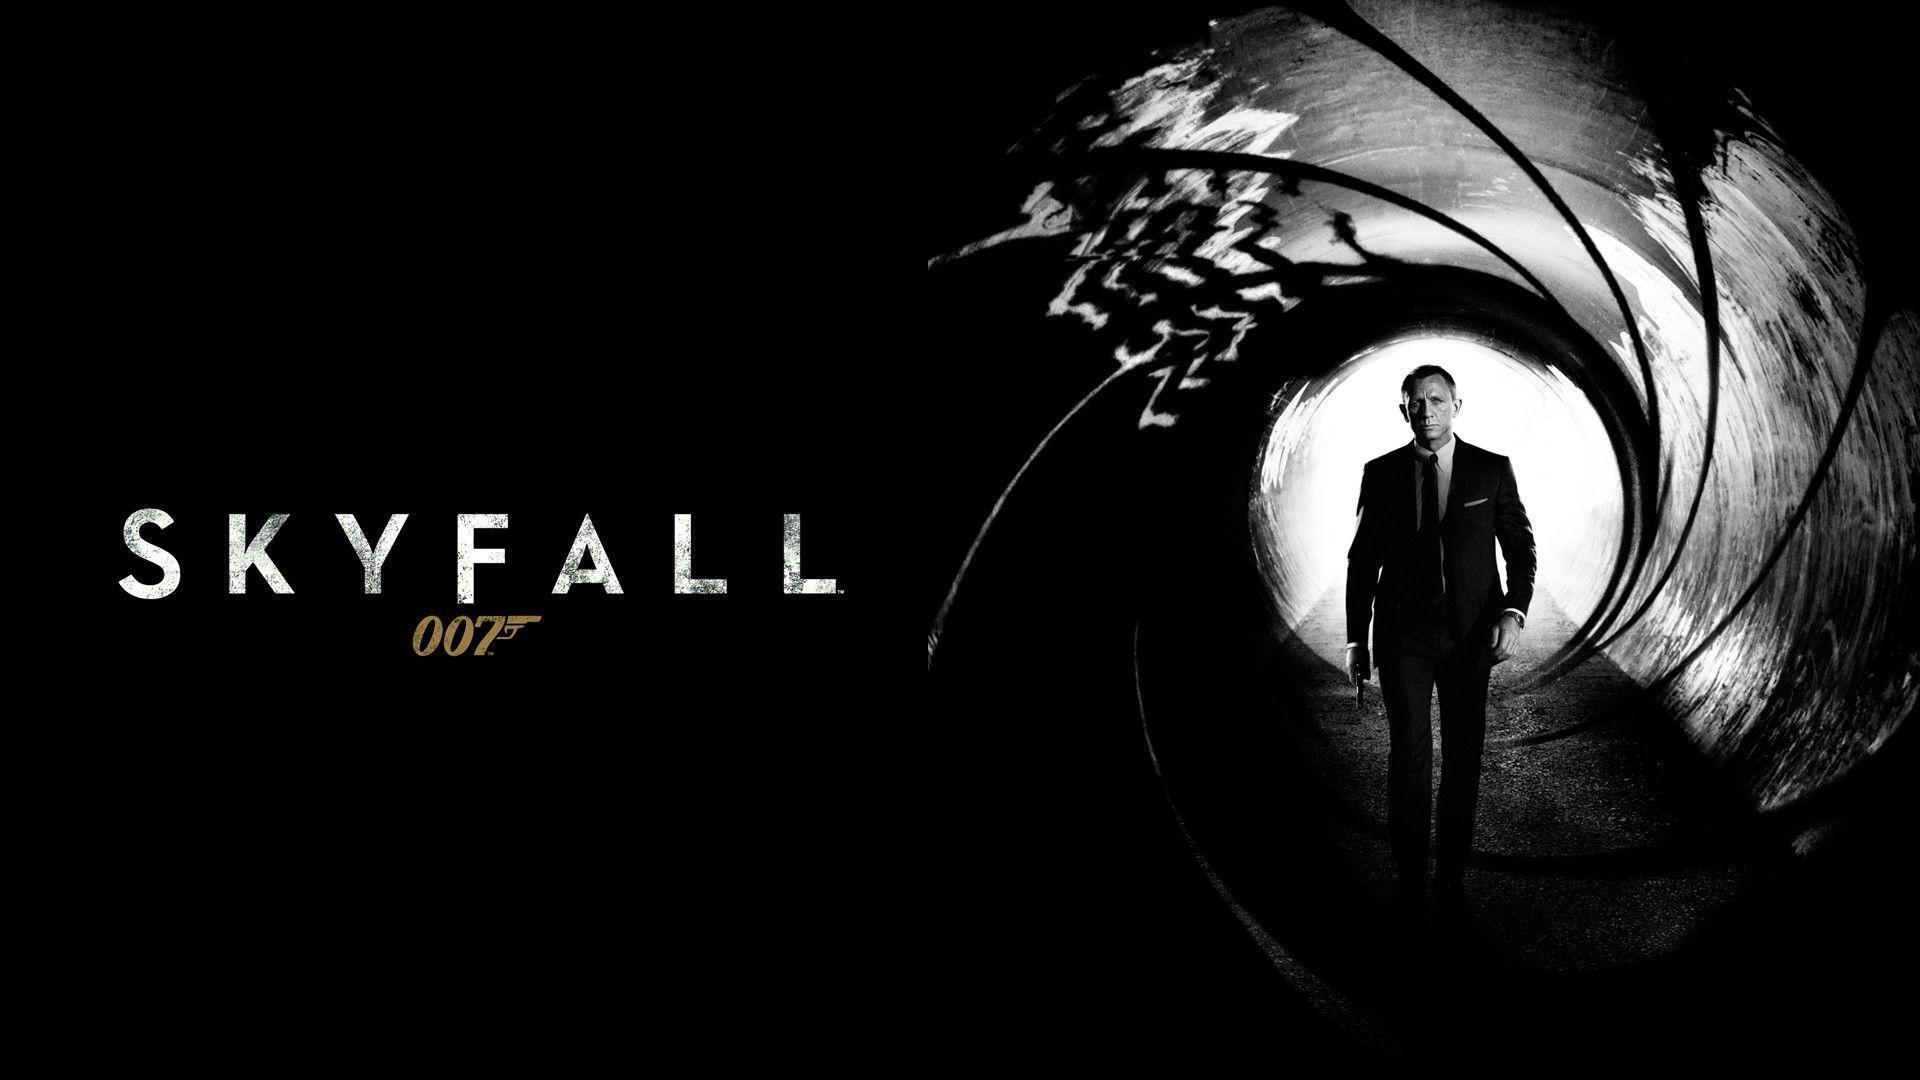 Wallpaper For > James Bond 007 Wallpaper